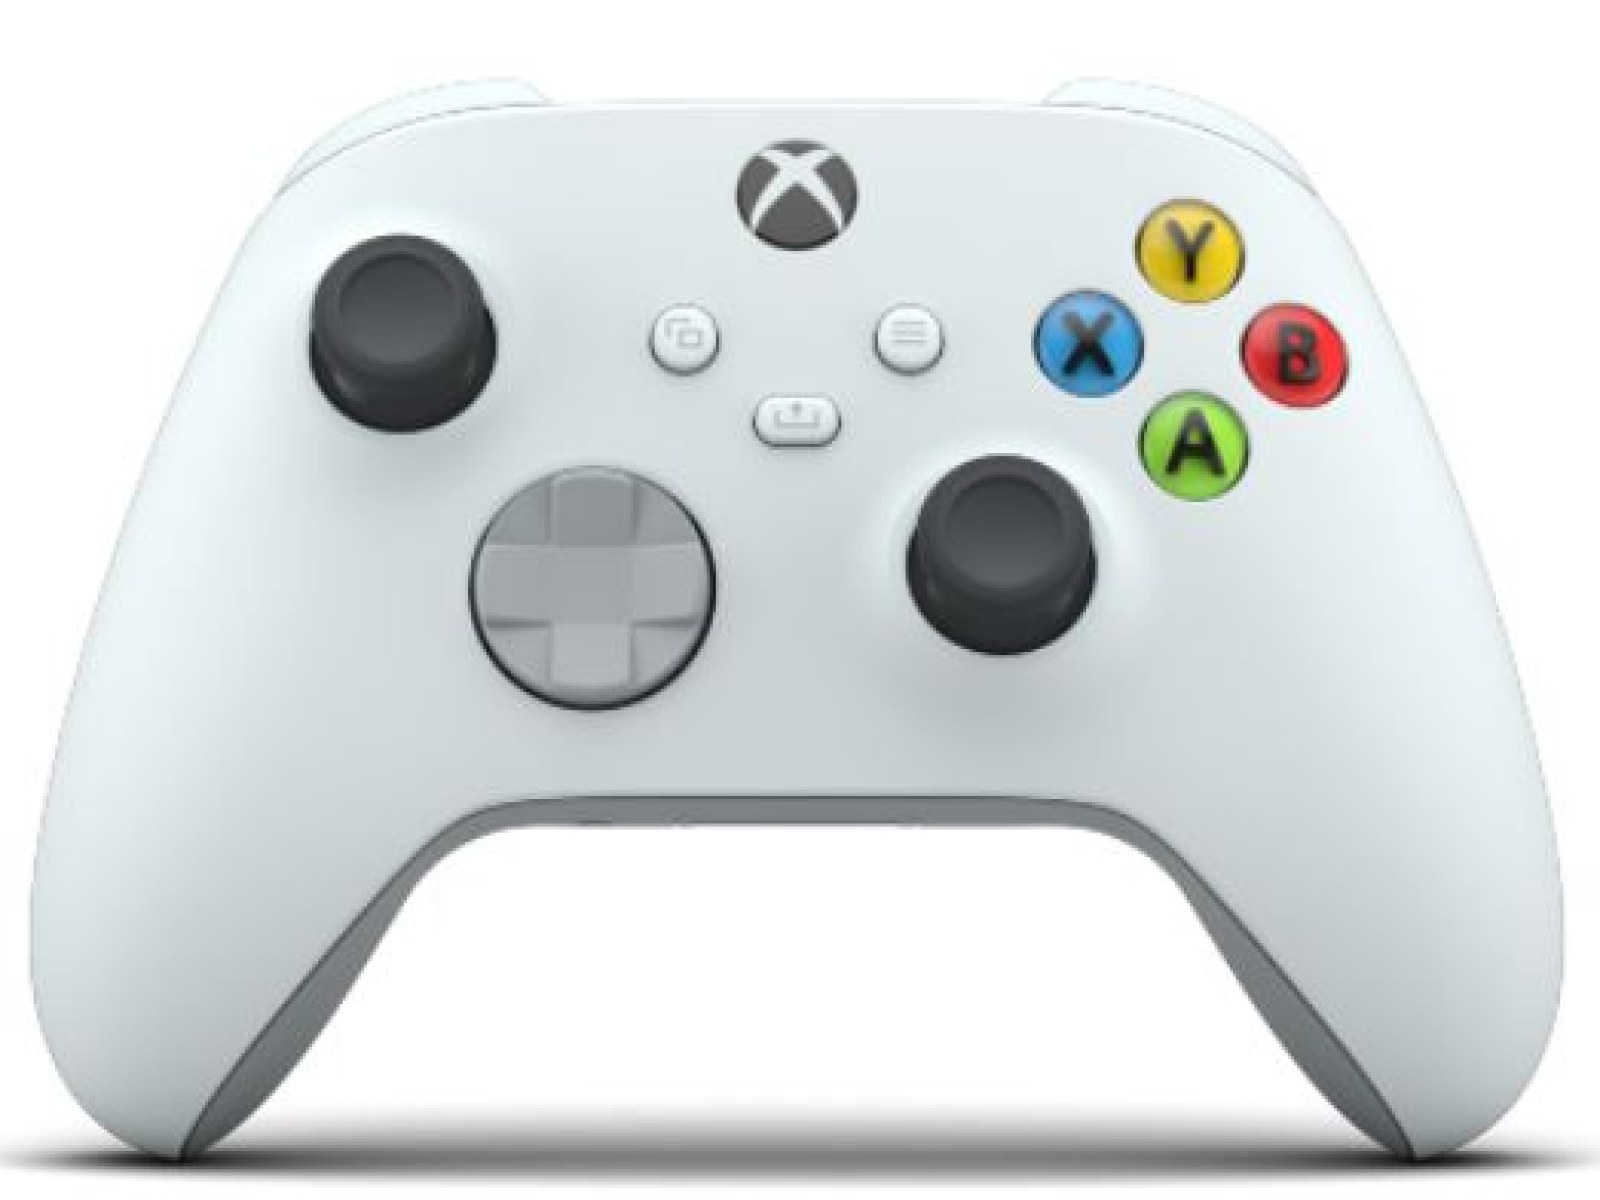 Ventileren waarschijnlijkheid fantoom Xbox 360 Controllers and 'Pokémon' Colors, Here are The 7 Best Xbox Design  Lab Creations